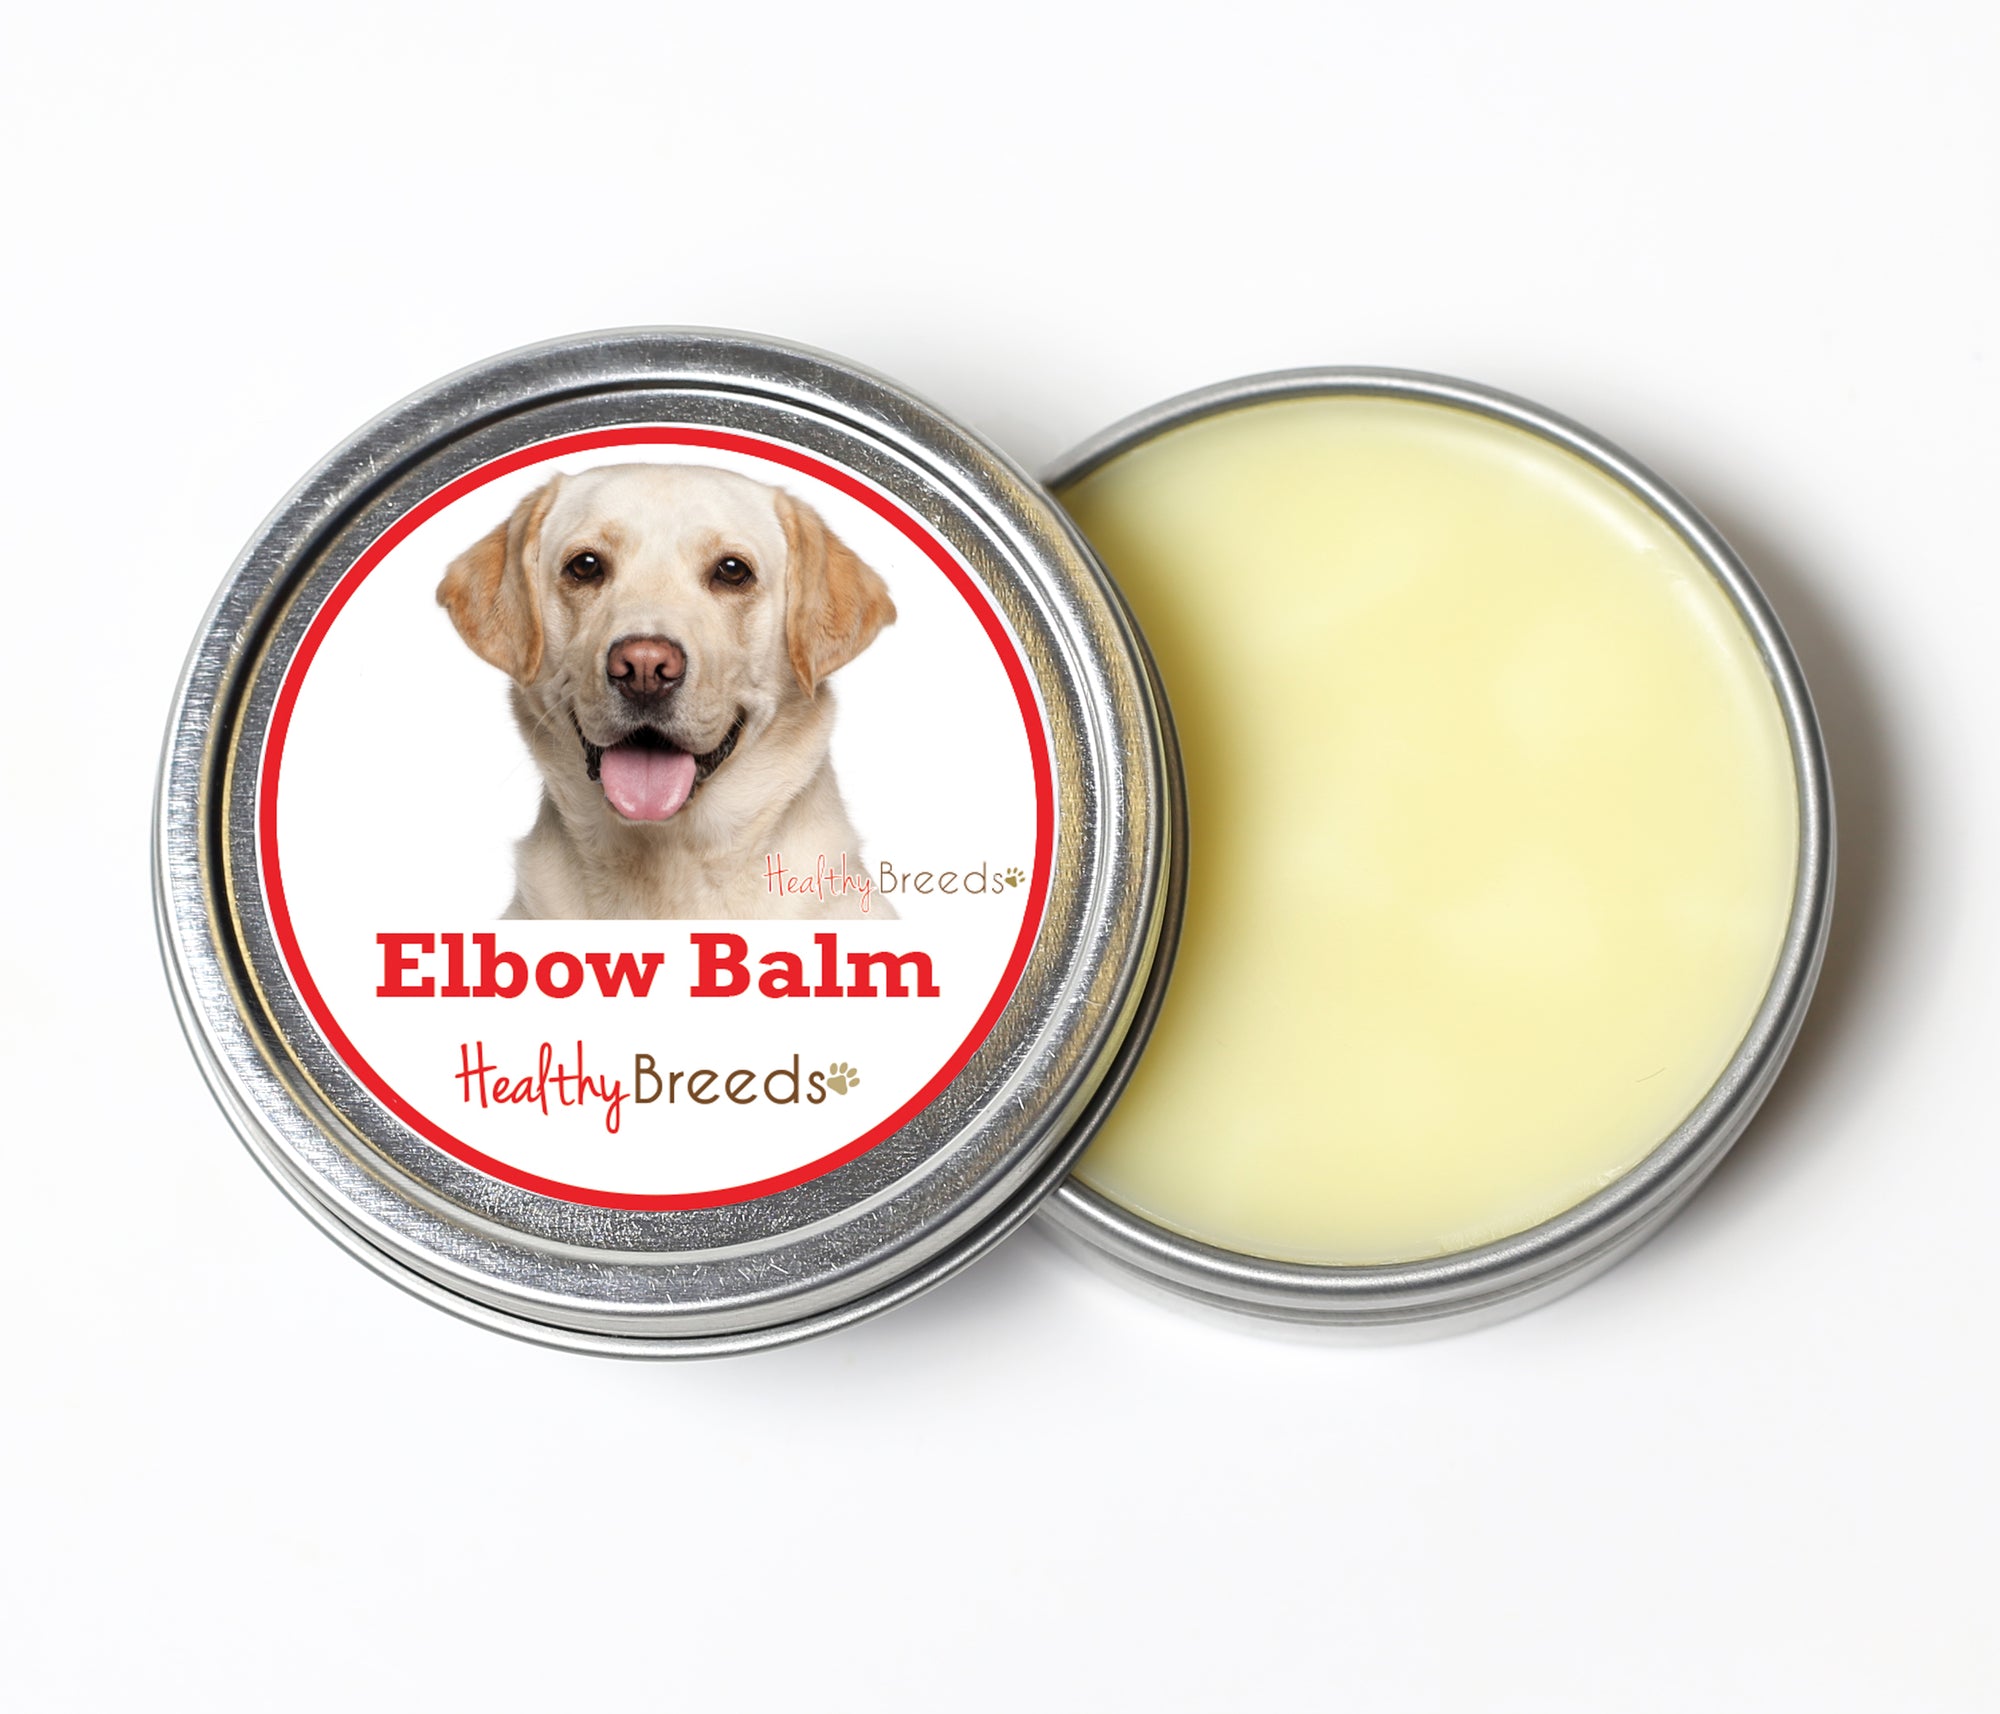 Healthy Breeds Labrador Retriever Dog Elbow Balm 2 oz